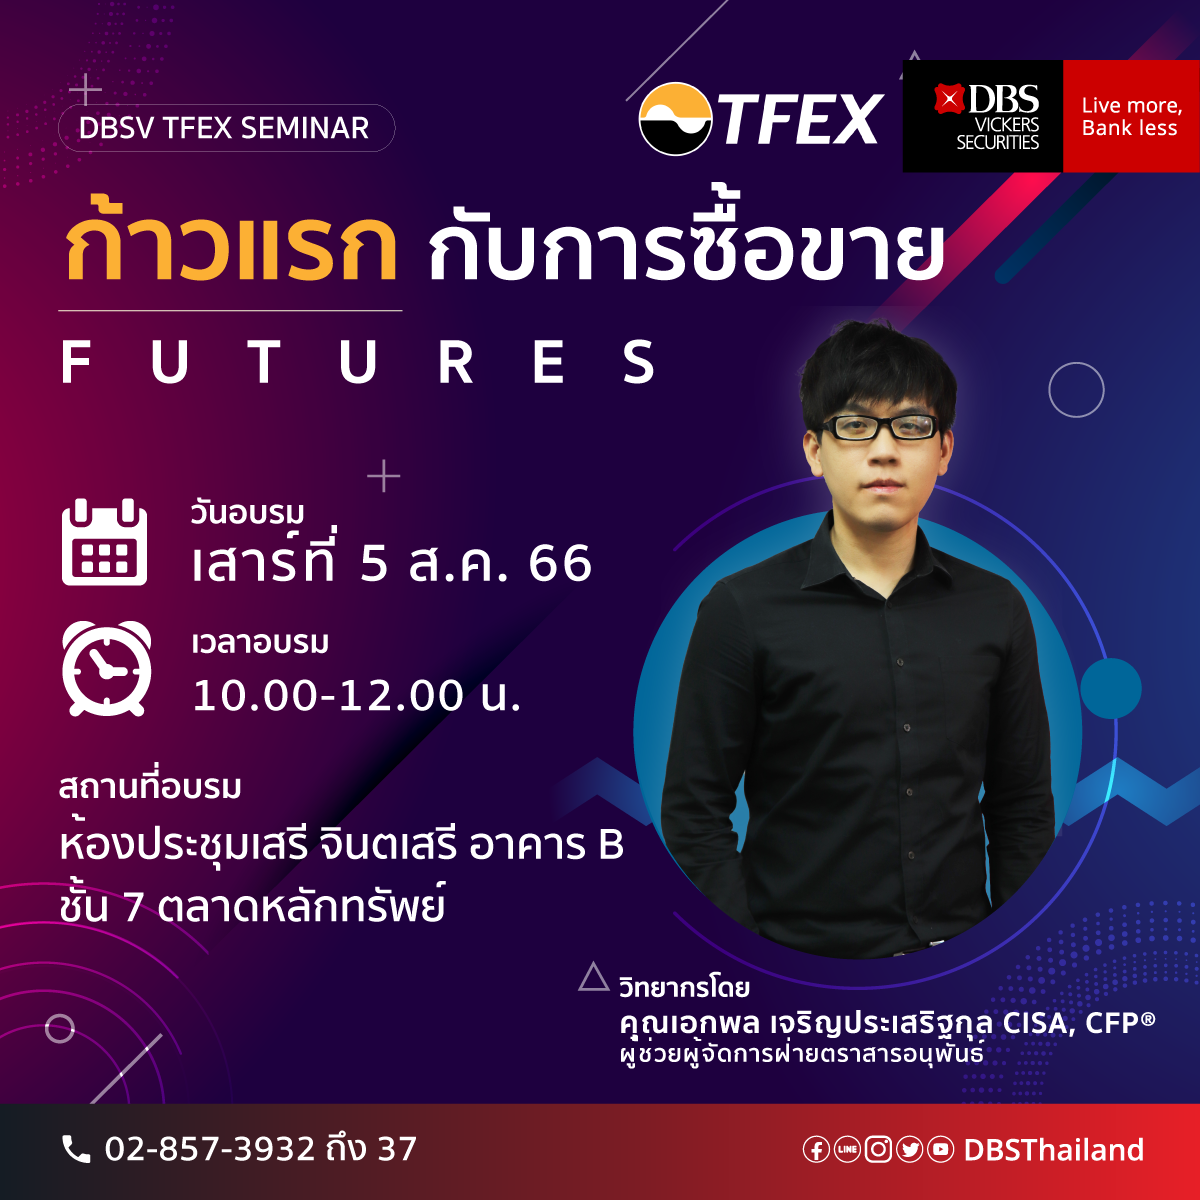 บริษัทหลักทรัพย์ดีบีเอส วิคเคอร์ส (ประเทศไทย) จัดอบรม DBSV TFEX Training หัวข้อ "ก้าวแรกกับการซื้อขาย Futures"